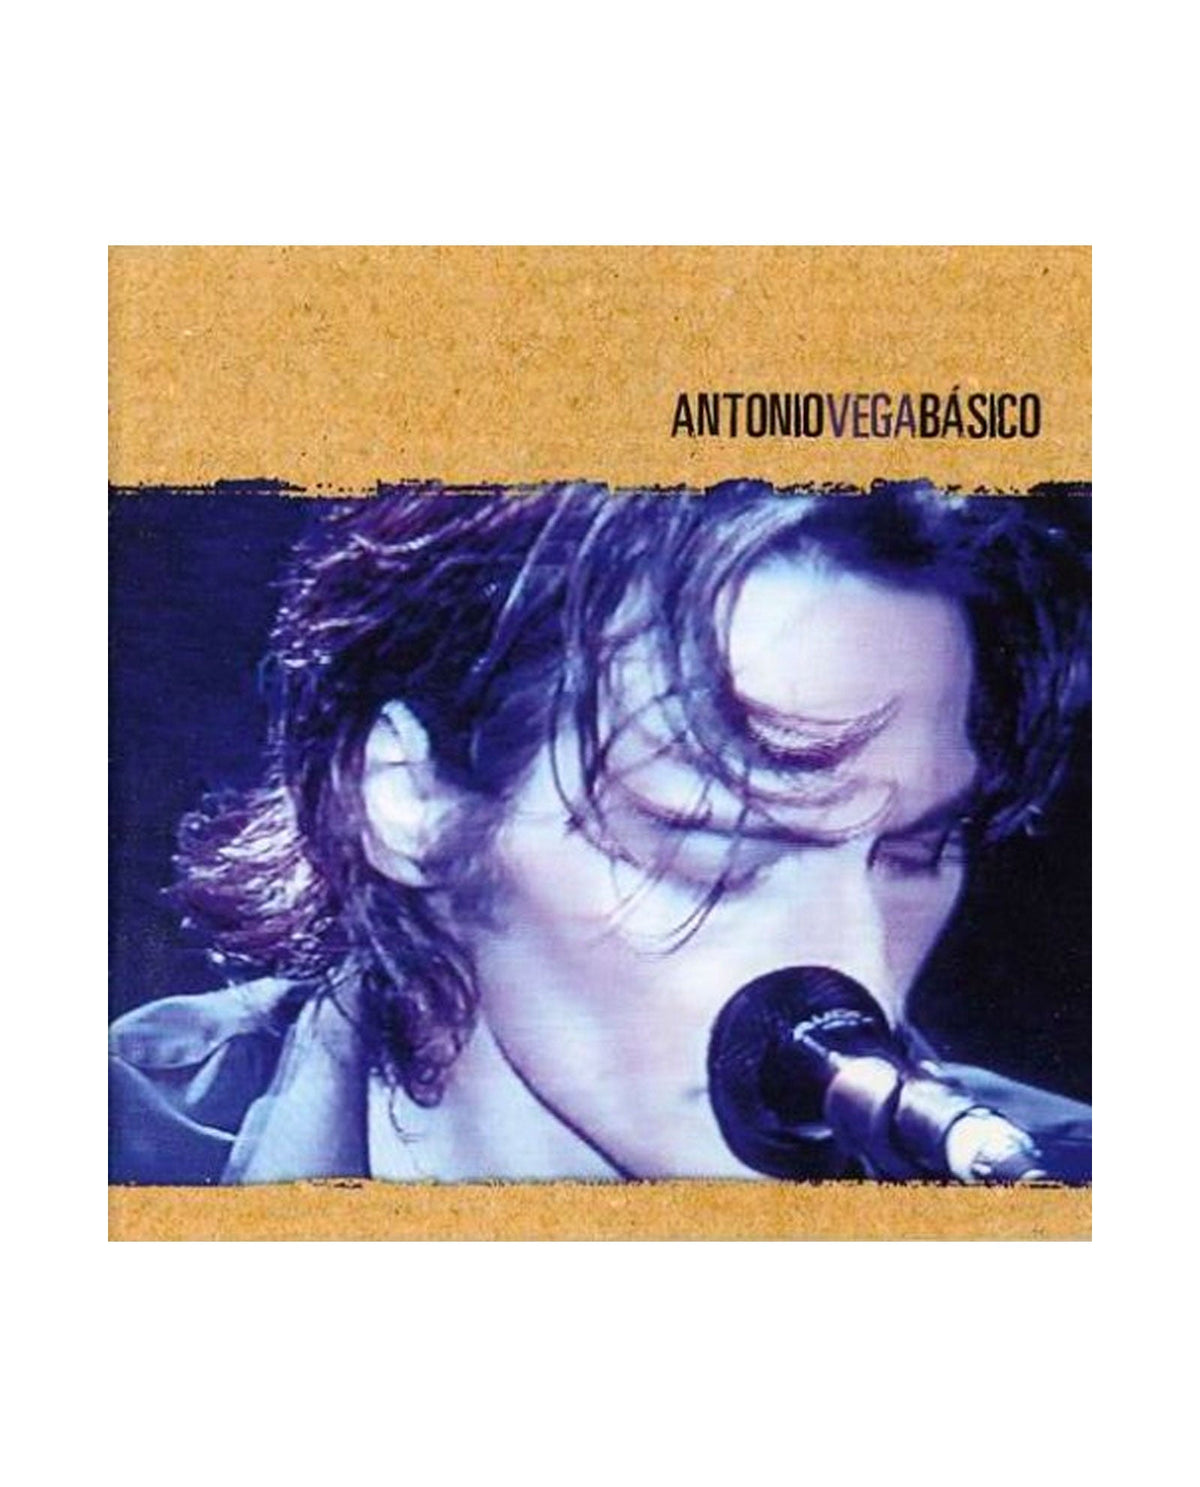 Antonio Vega - LP Vinilo "Básico" - D2fy · Rocktud - Rocktud